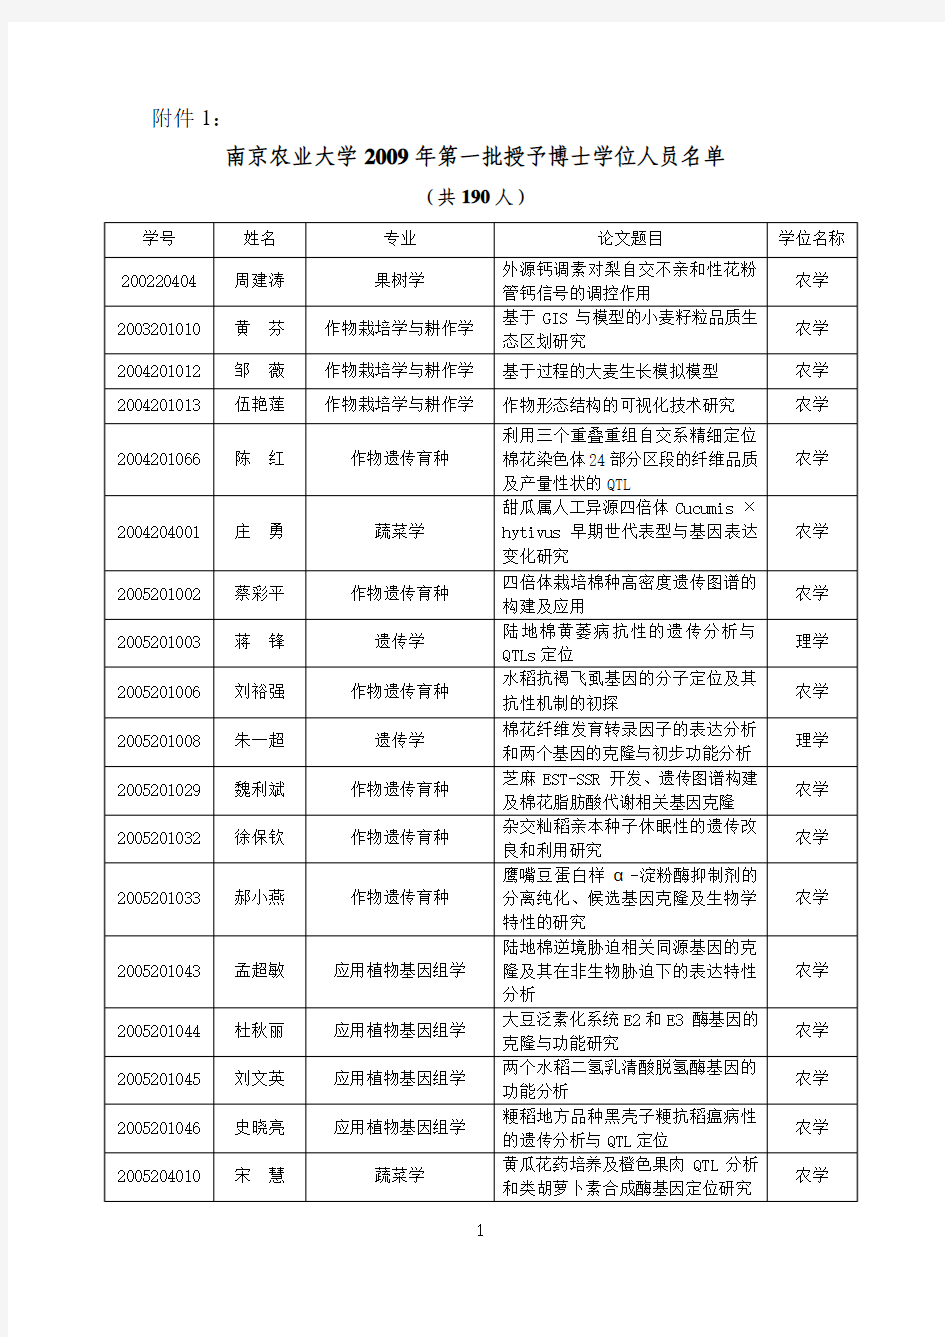 南京农业大学2009年第一批授予博士学位人员名单